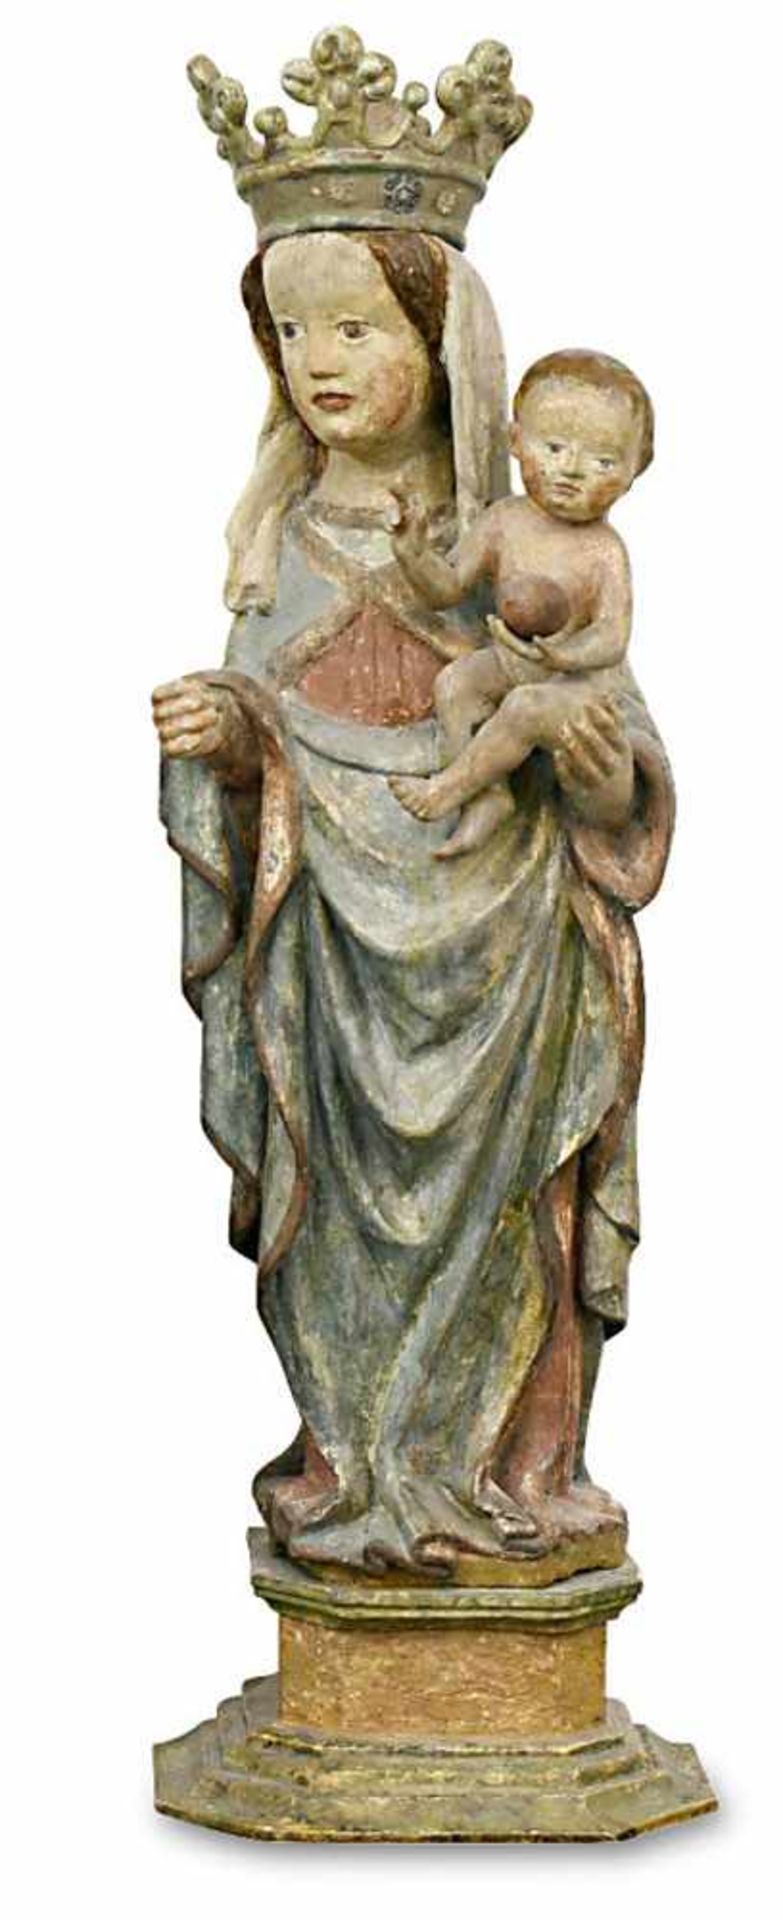 Muttergottes mit KindSüddeutsch, Mitte 15. Jh.Holz, geschnitzt, Farbfassung.Rest., erg.H. 66 cm (